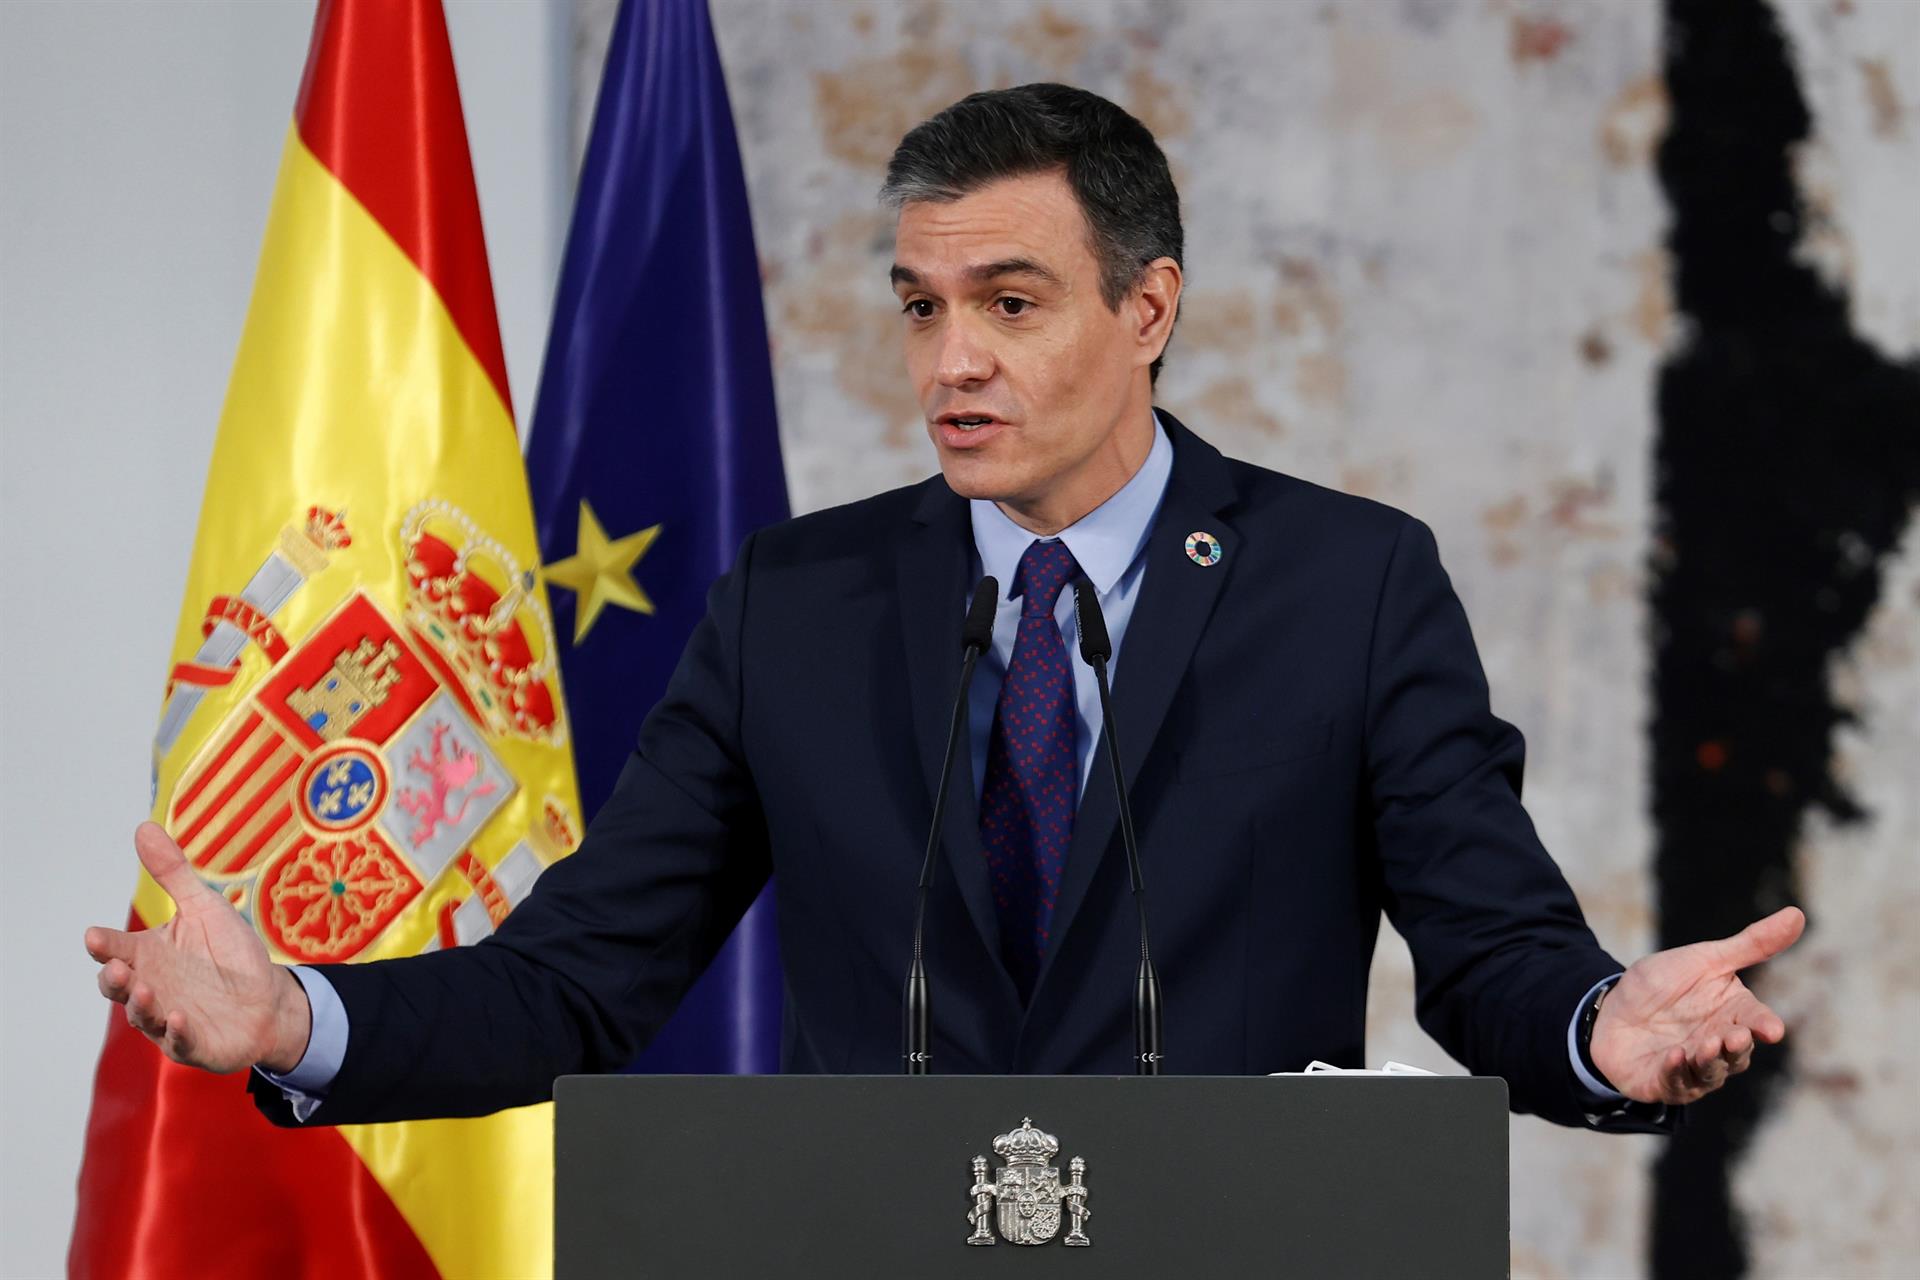 Sánchez defiende los indultos, dice que “jamás” habrá referéndum y reta a Casado a liderar una moción de censura